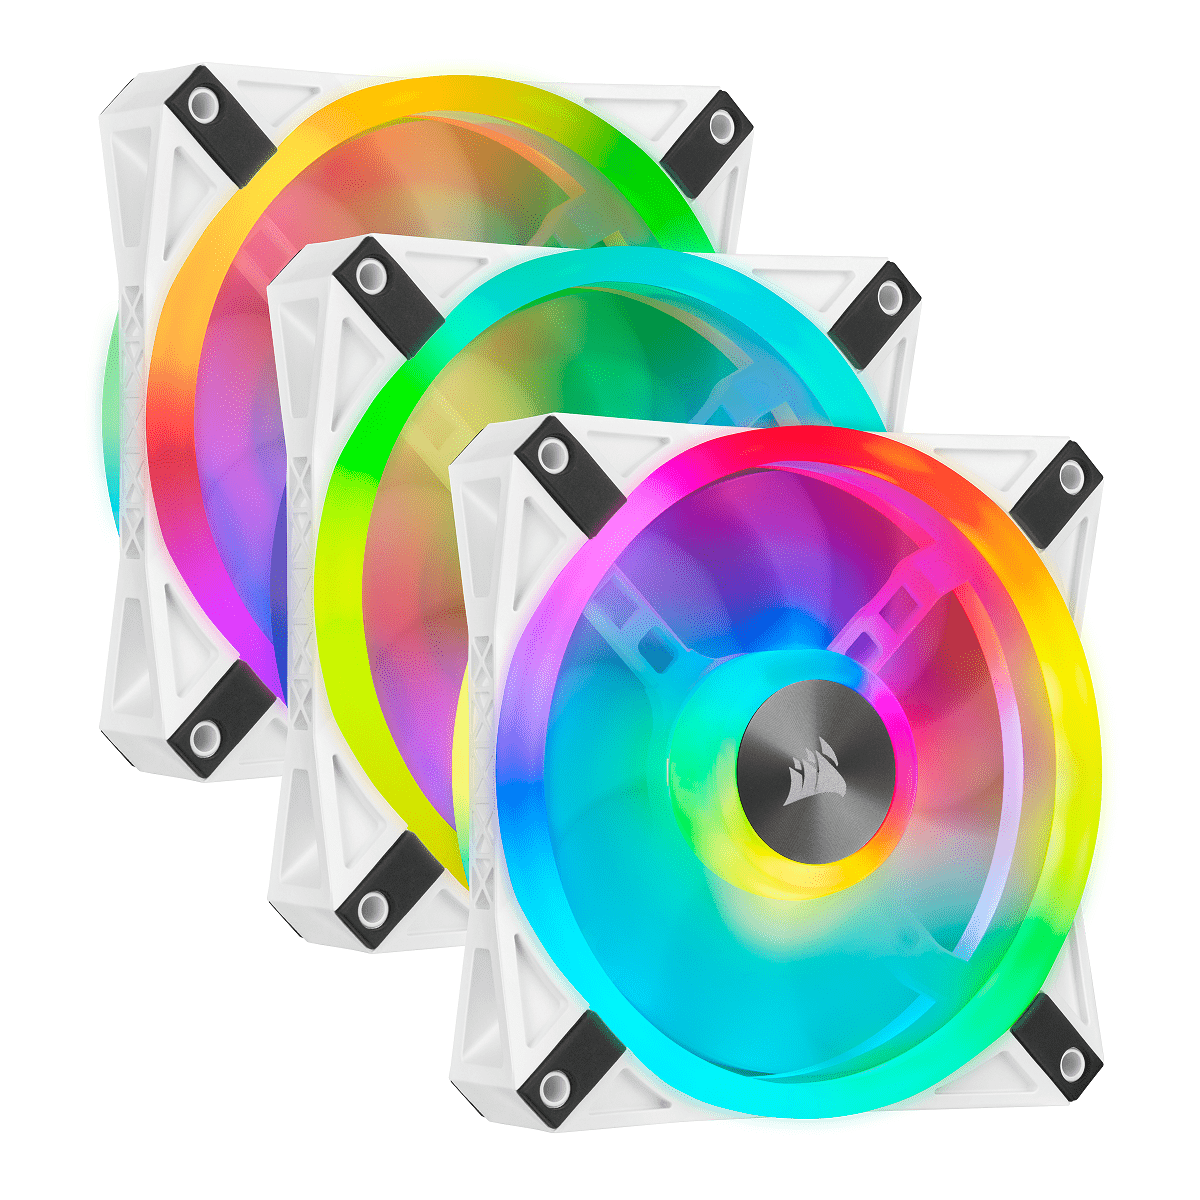 Corsair: i nuovi componenti di raffreddamento con illuminazione RGB